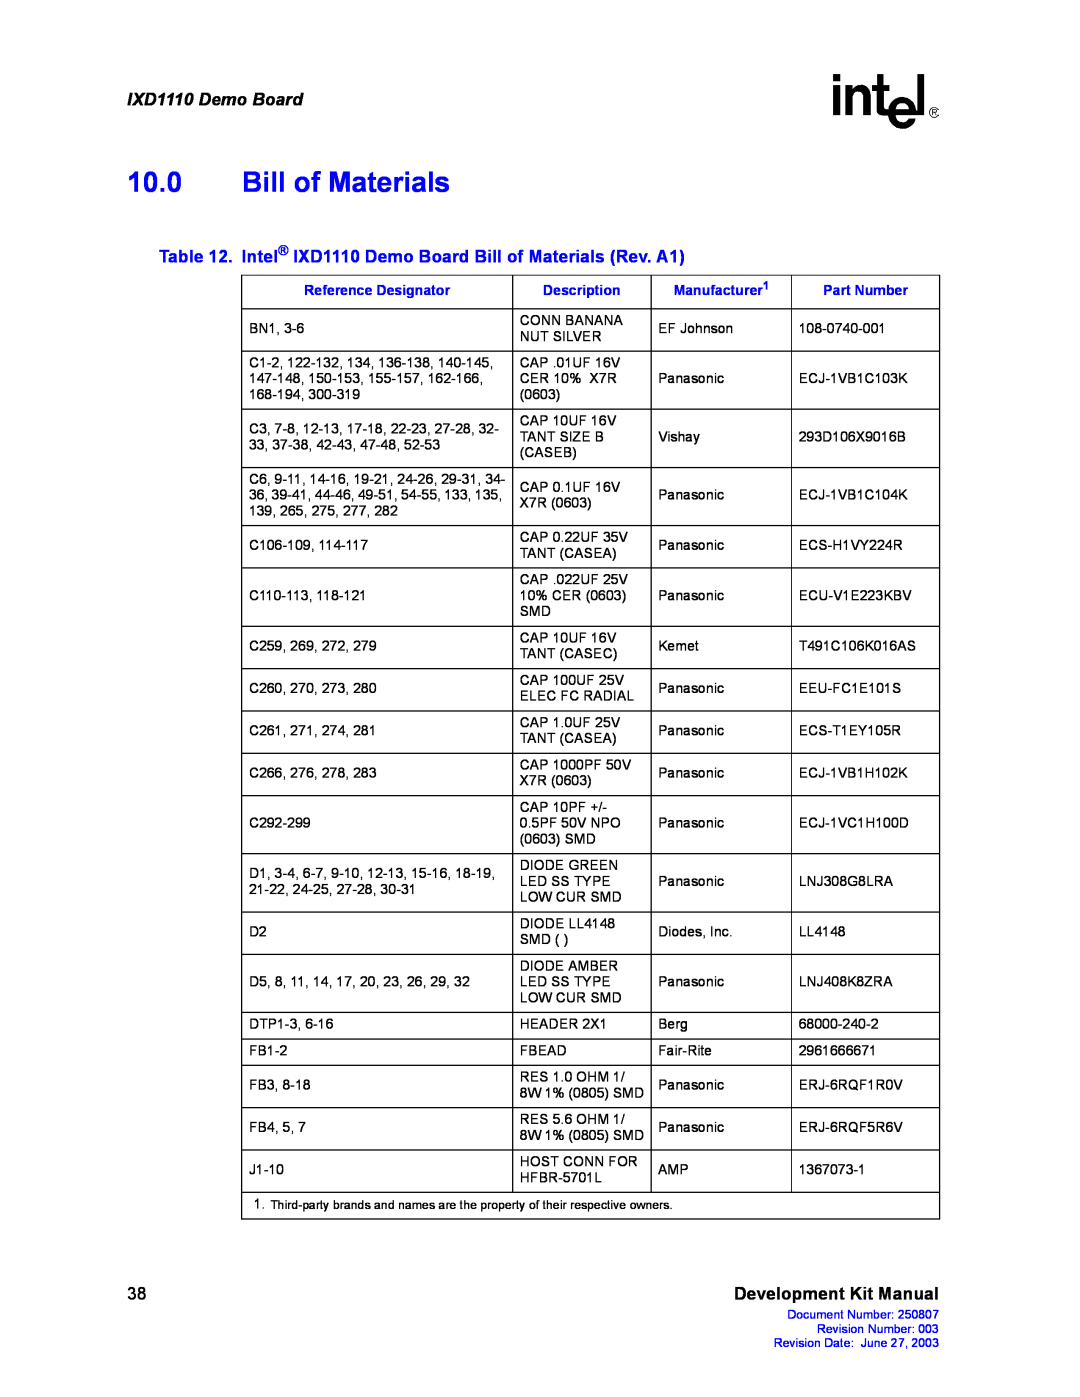 Intel manual Intel IXD1110 Demo Board Bill of Materials Rev. A1, Development Kit Manual 